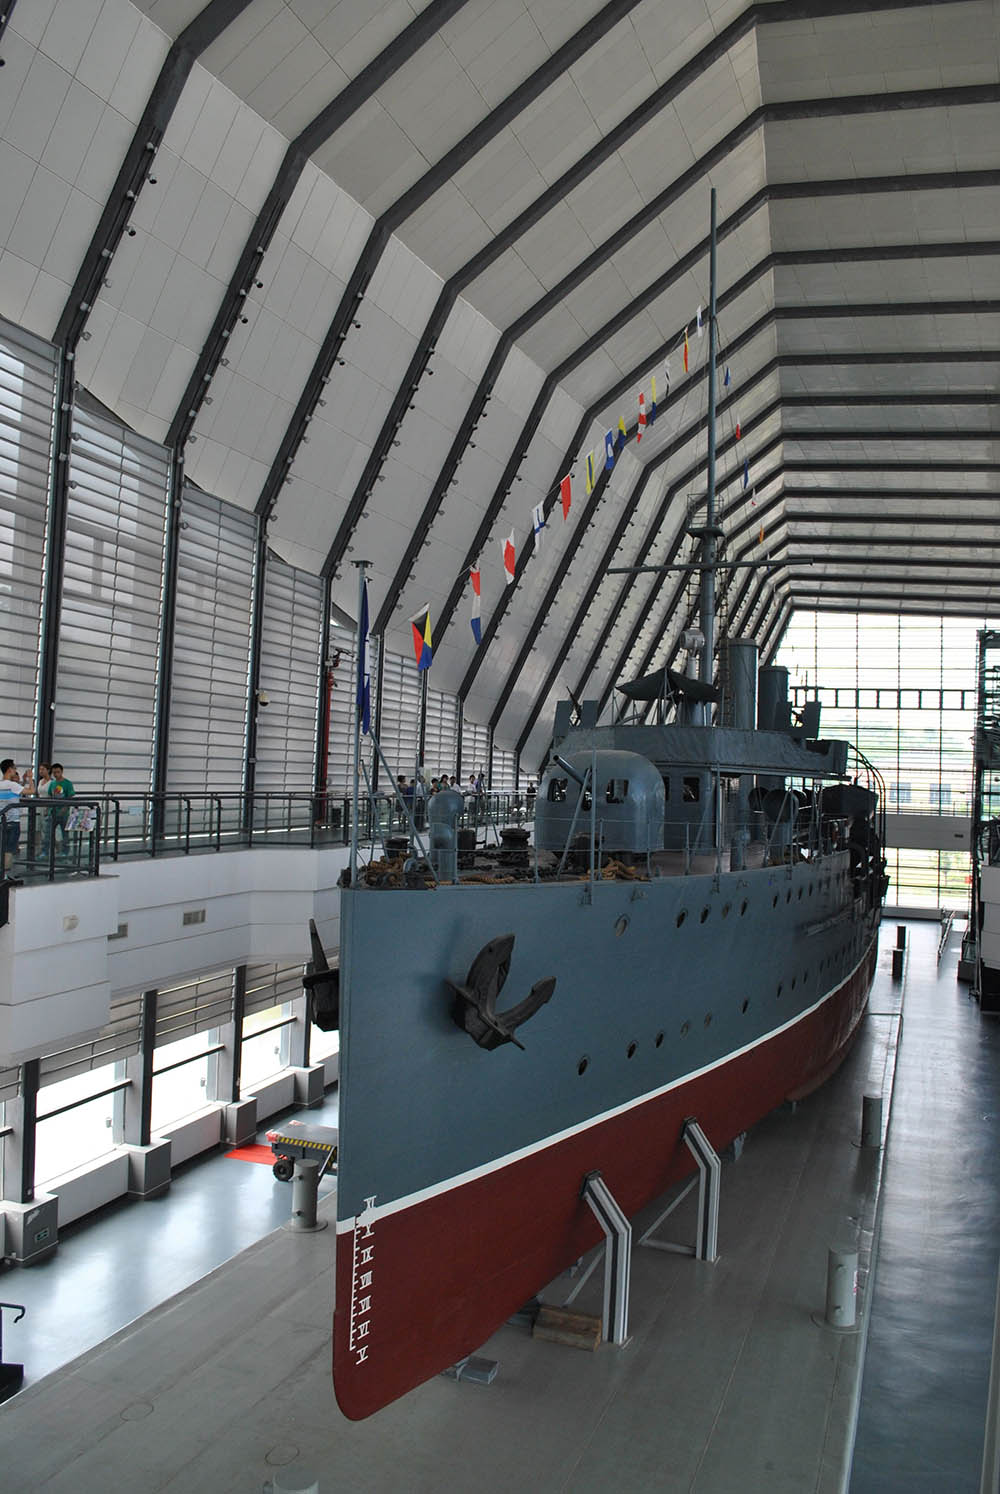 Zhongshan Warship Museum #2